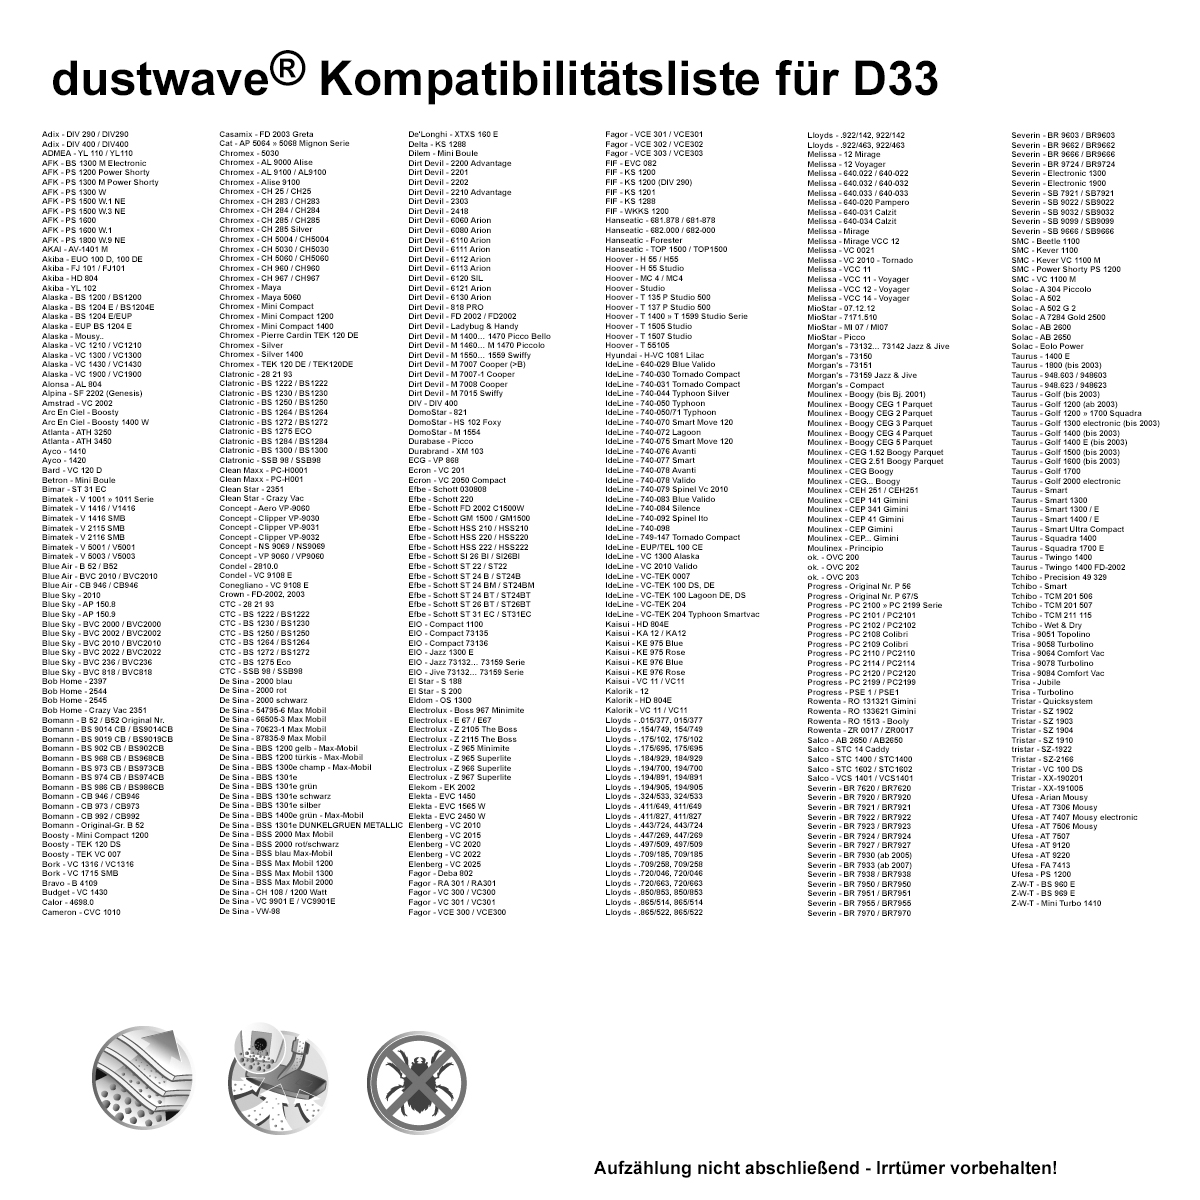 Dustwave® 10 Staubsaugerbeutel für Akiba FJ 101 / FJ101 - hocheffizient mit Hygieneverschluss - Made in Germany